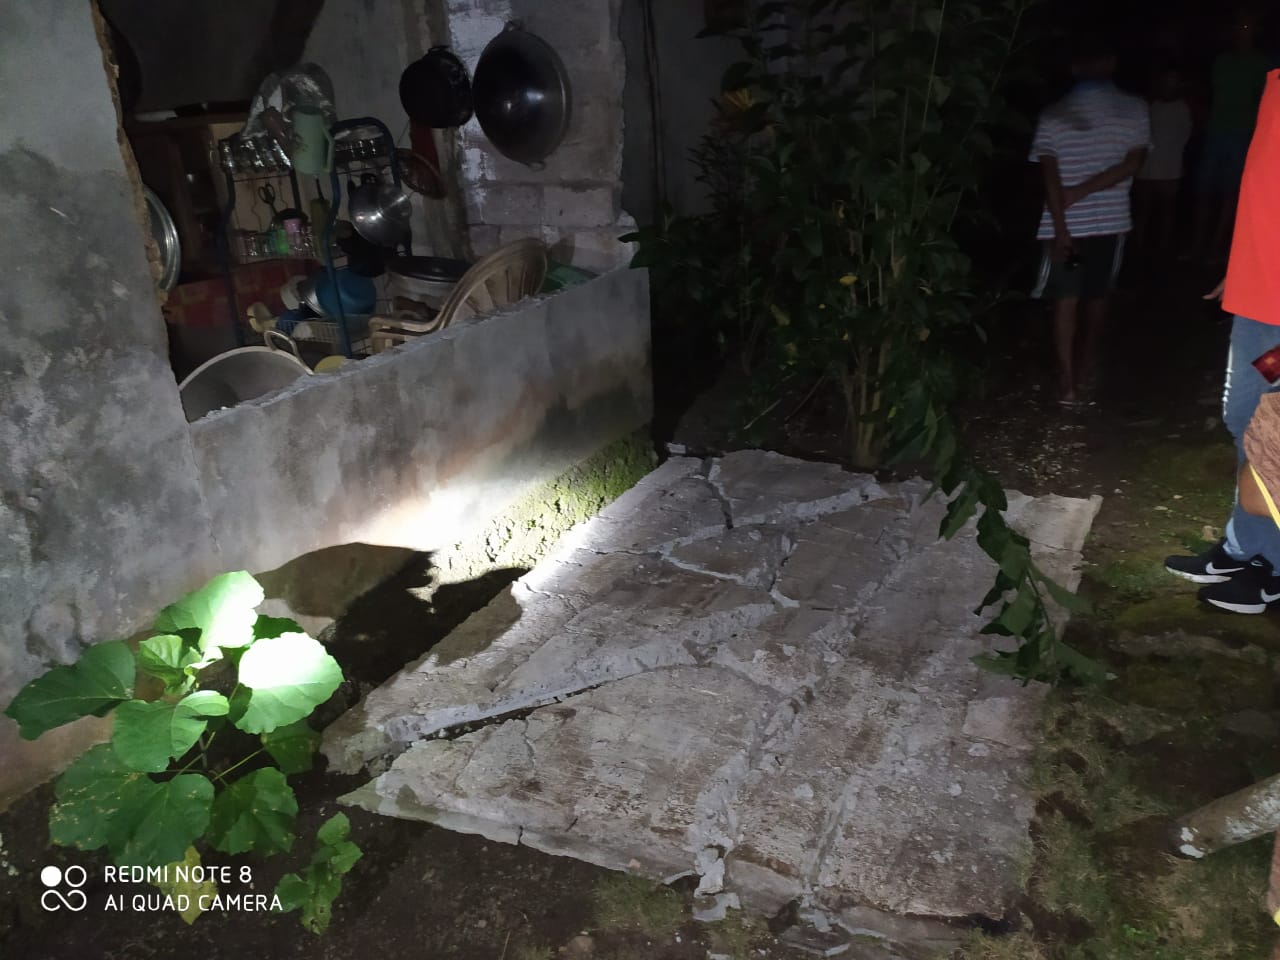 Salah satu bangunan rumah warga terdampak gempa di Kabupaten Kepulauan Talaud, Sulawesi Utara (Sulut), yang terjadi Kamis (21/1/2021) malam, berkekuatan M7,1. BPBD Talaud/Halonusa